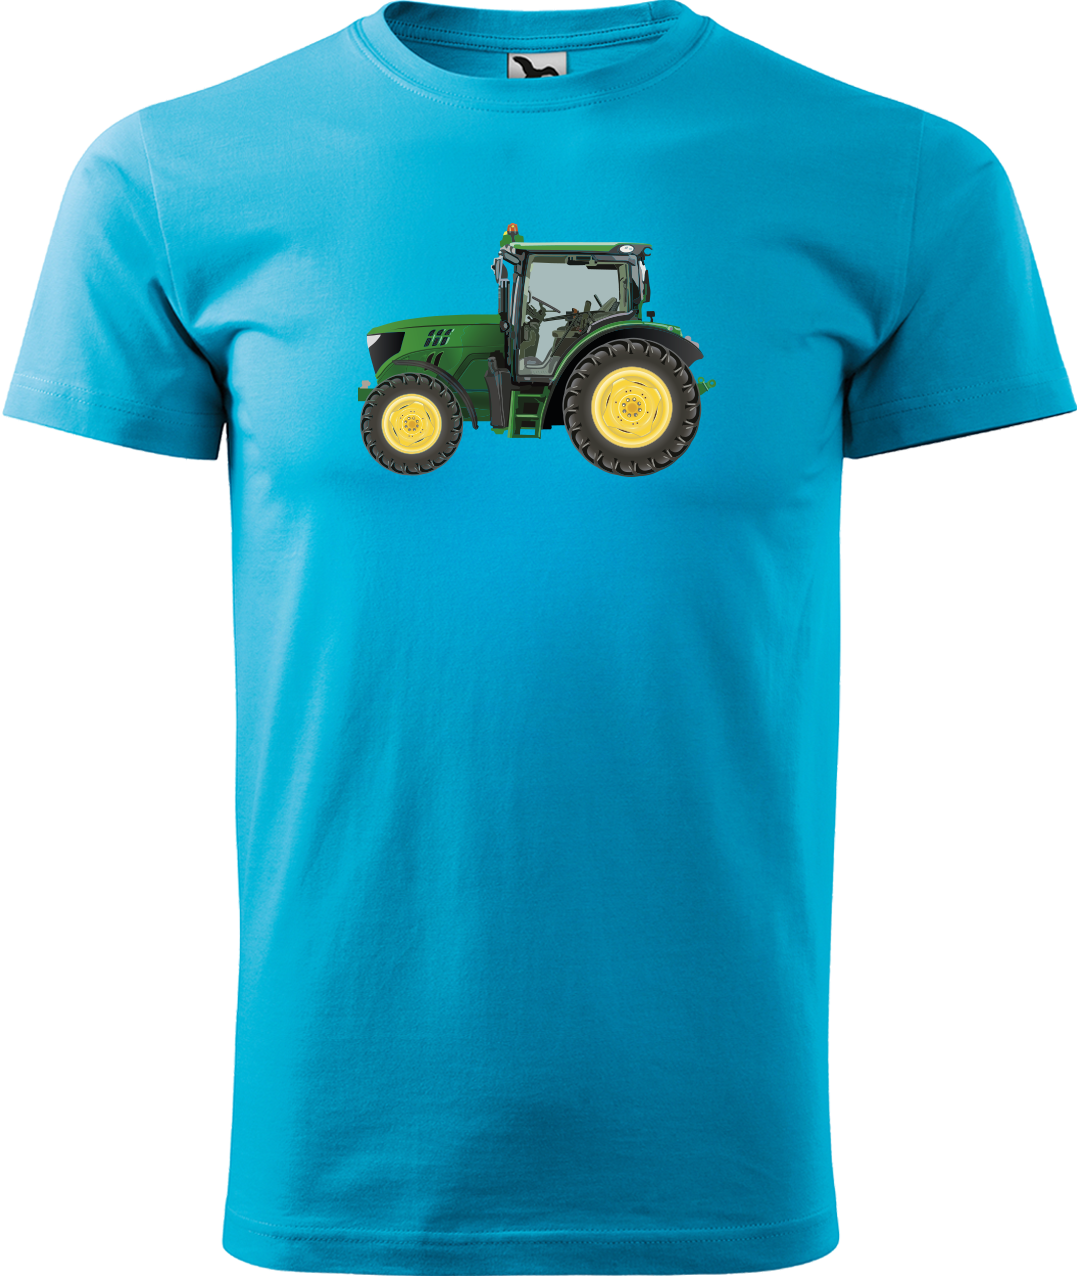 Tričko s traktorem - Zelený traktor Velikost: M, Barva: Tyrkysová (44)